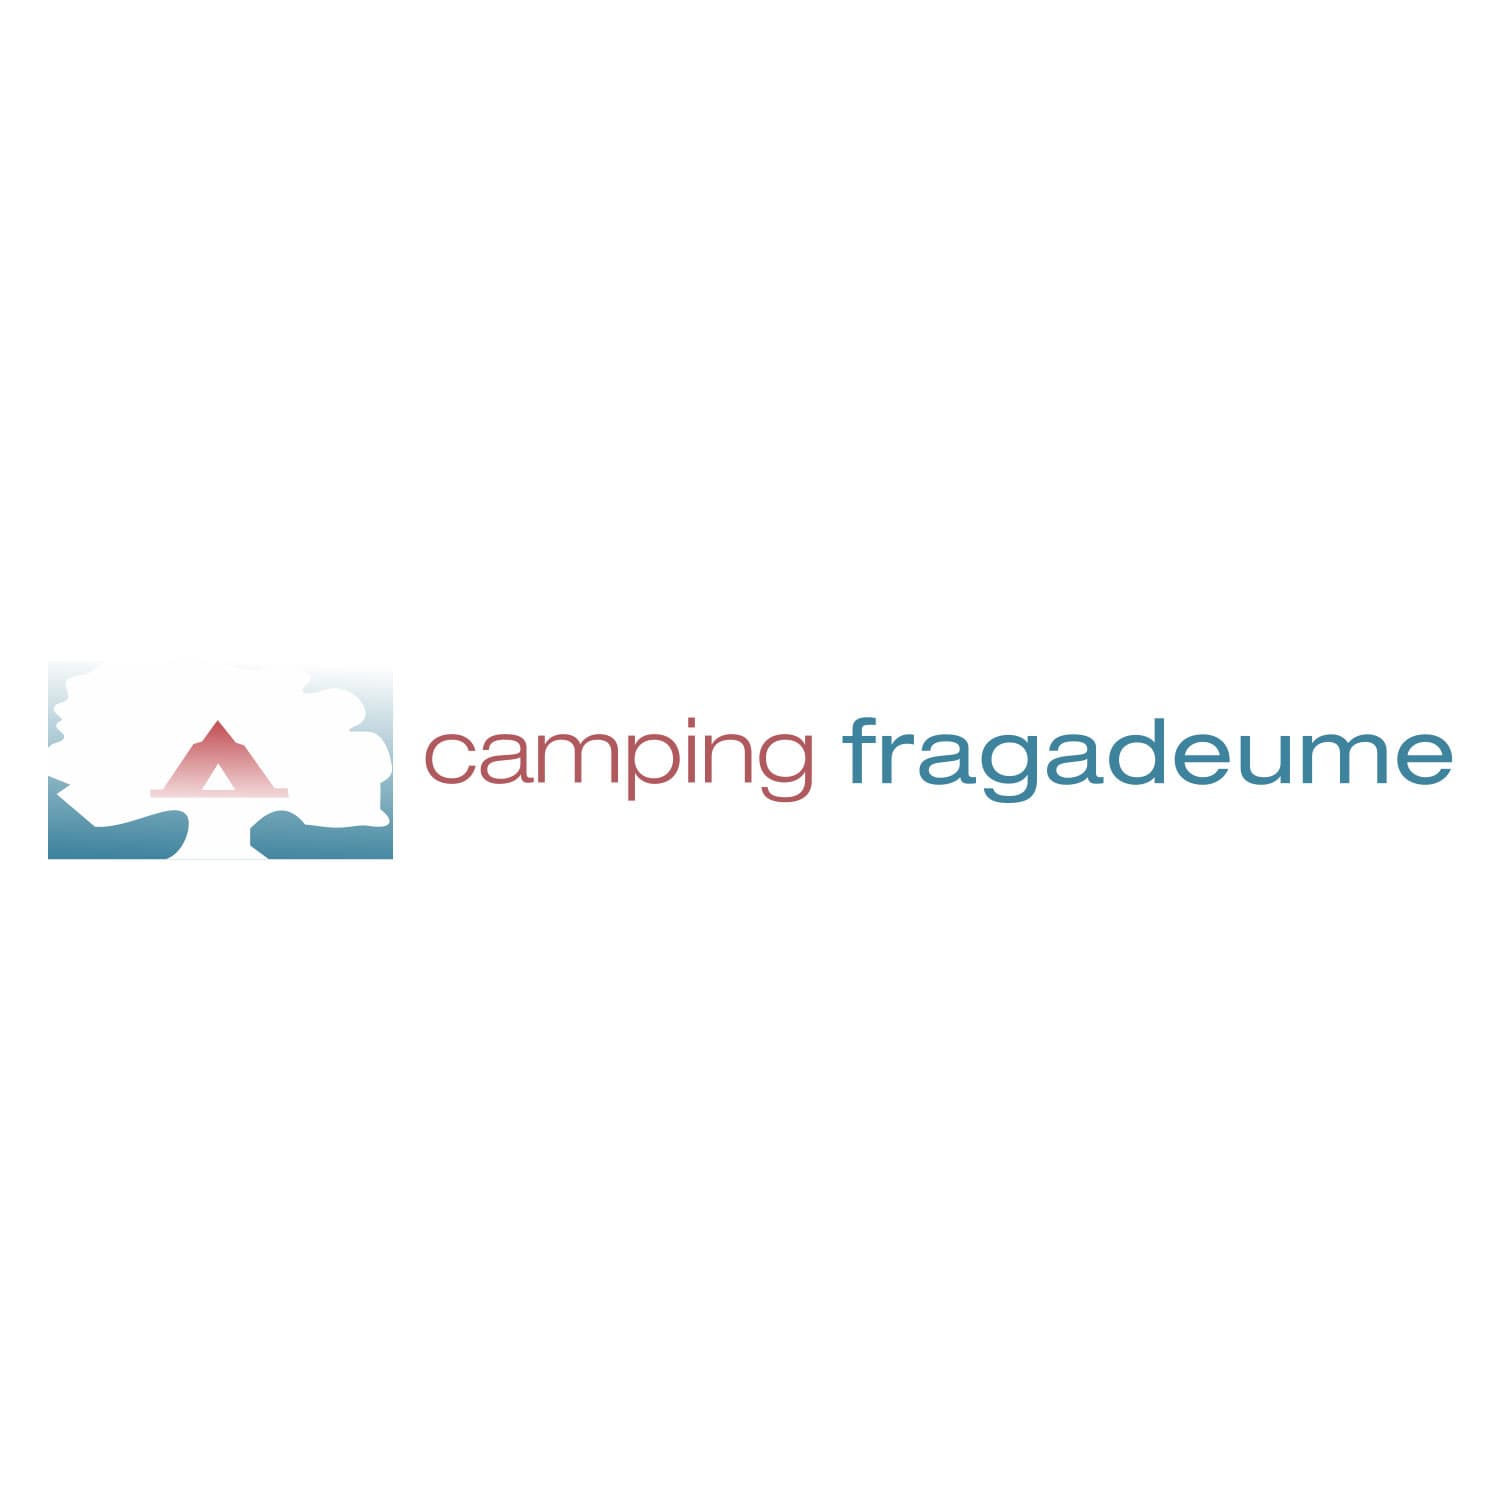 (c) Campingfragadeume.com